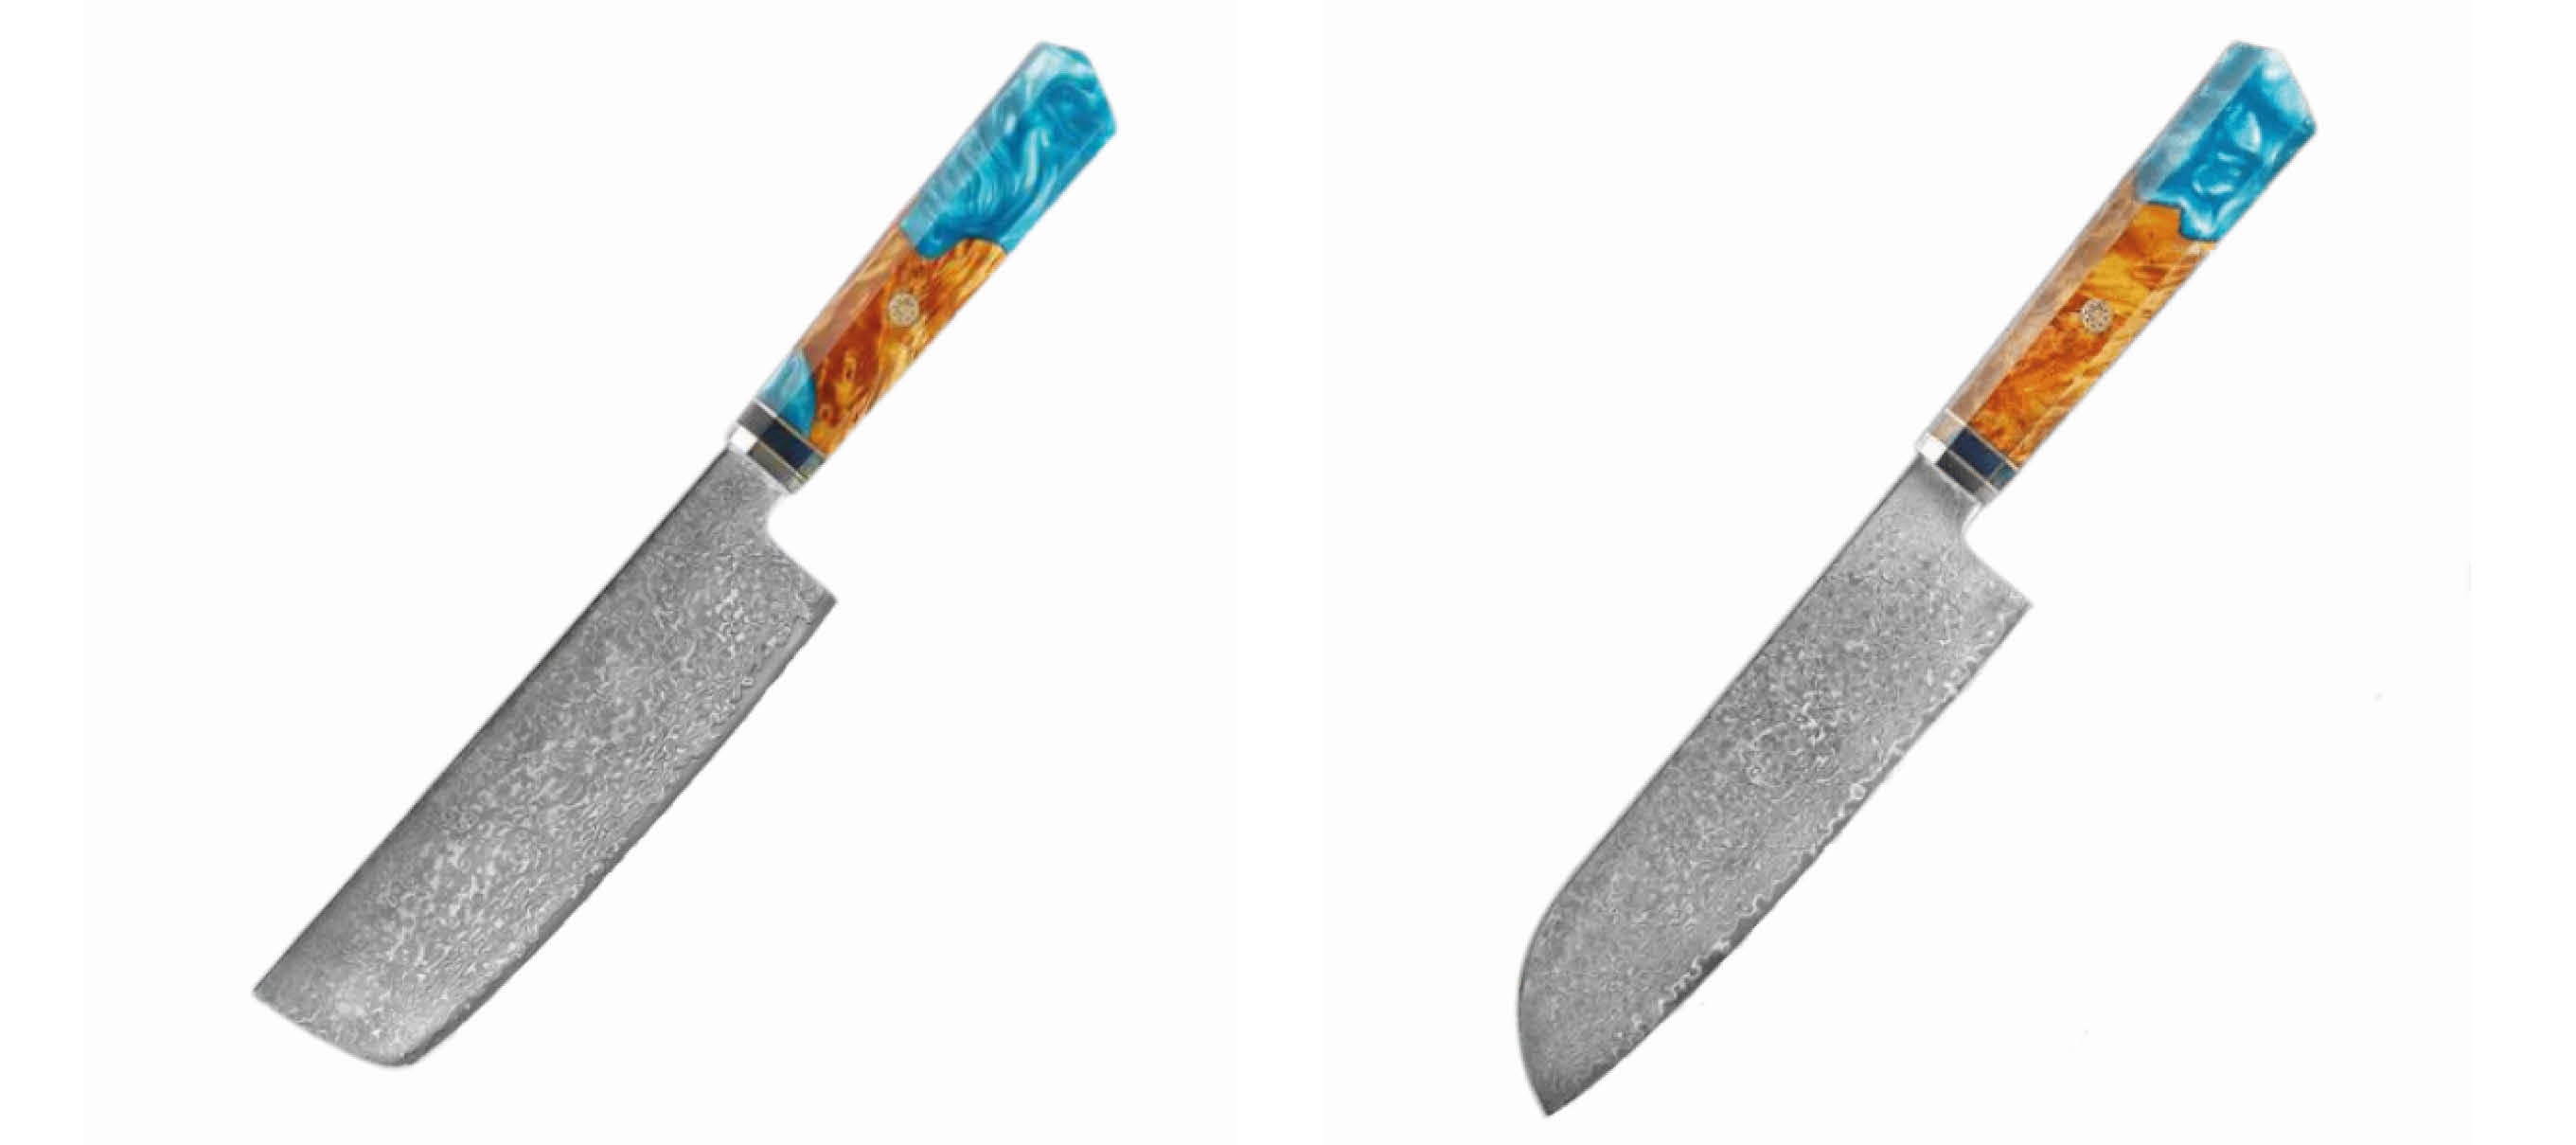 Quelle est la différence entre un couteau Nakiri et un couteau Santoku? –  santokuknives